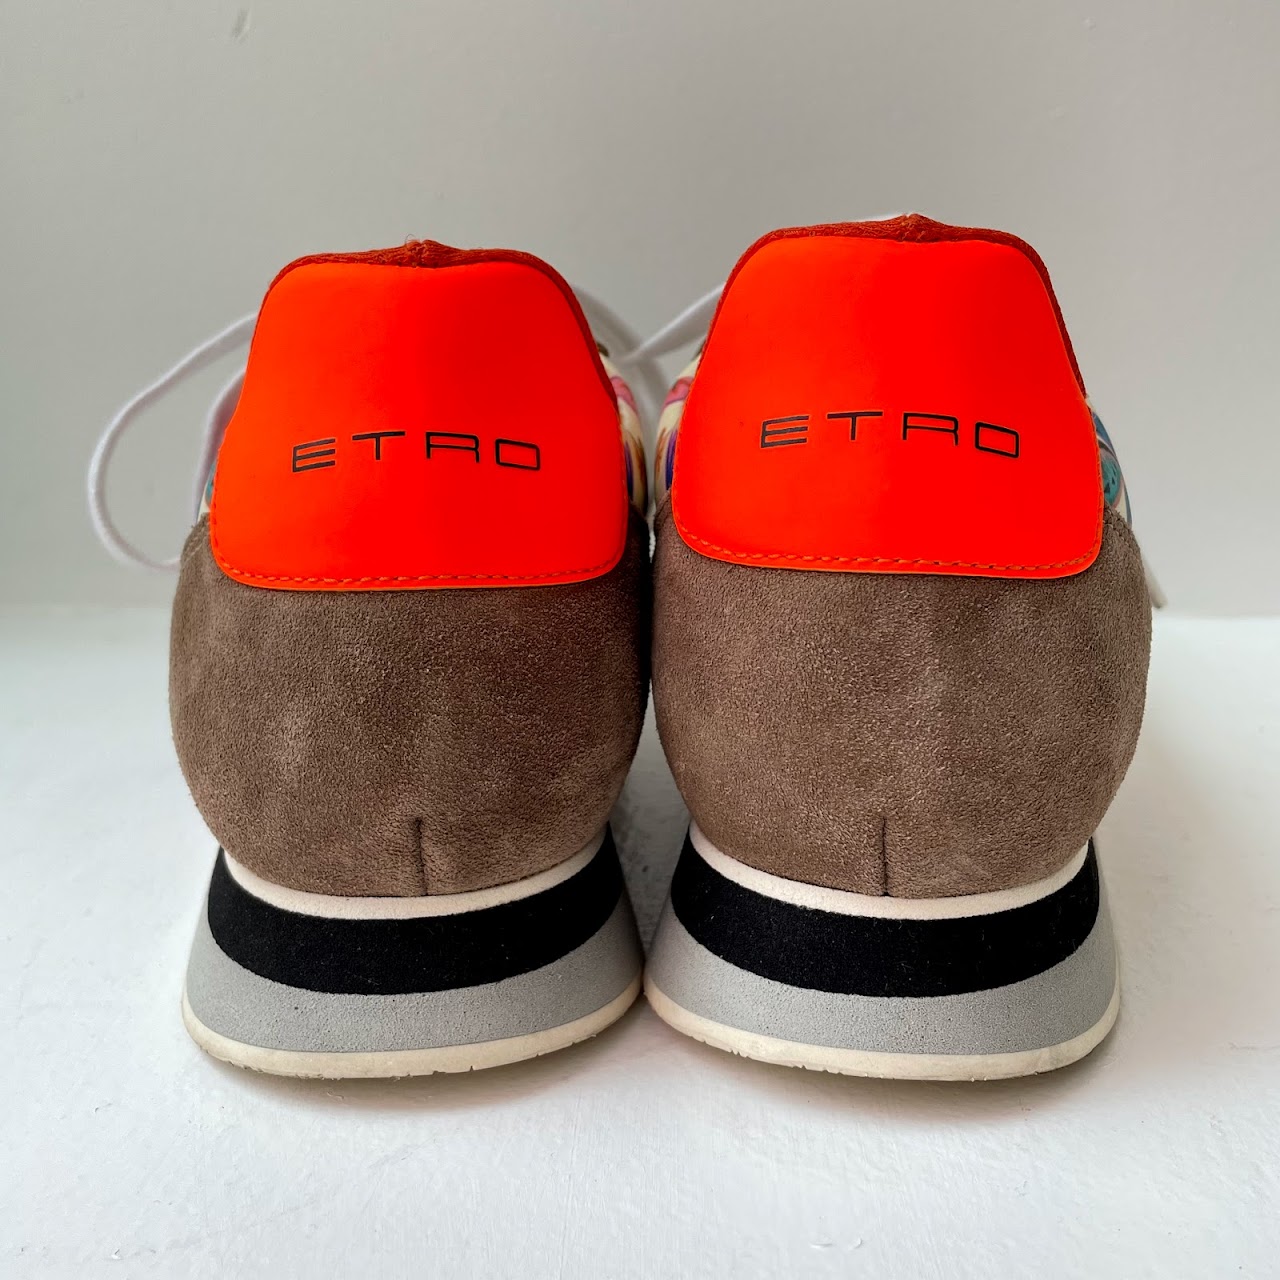 Etro Graphic Print Sneakers